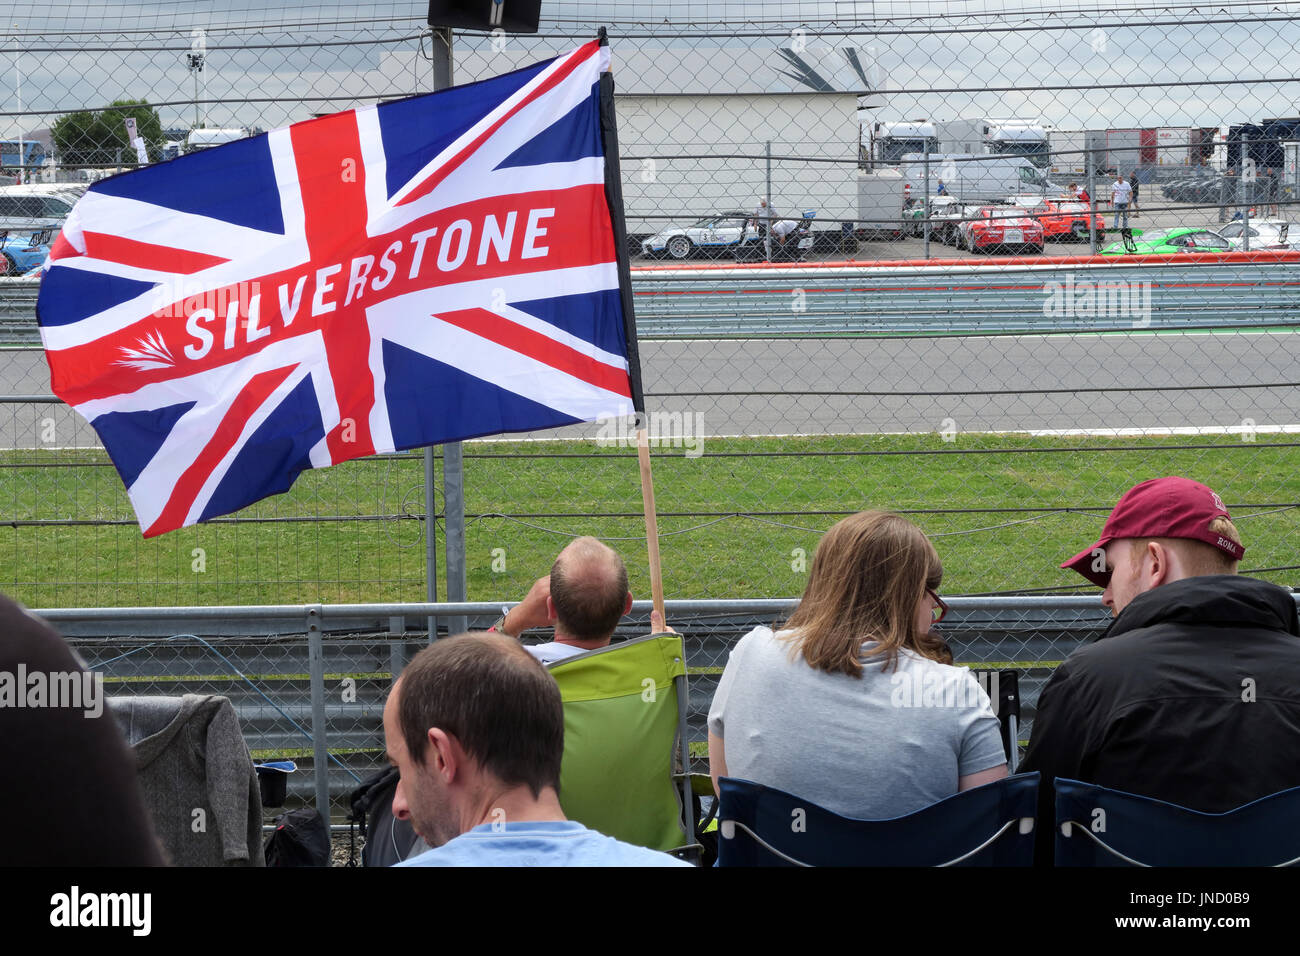 Drapeau à Silverstone circuit de course de Formule1 Banque D'Images